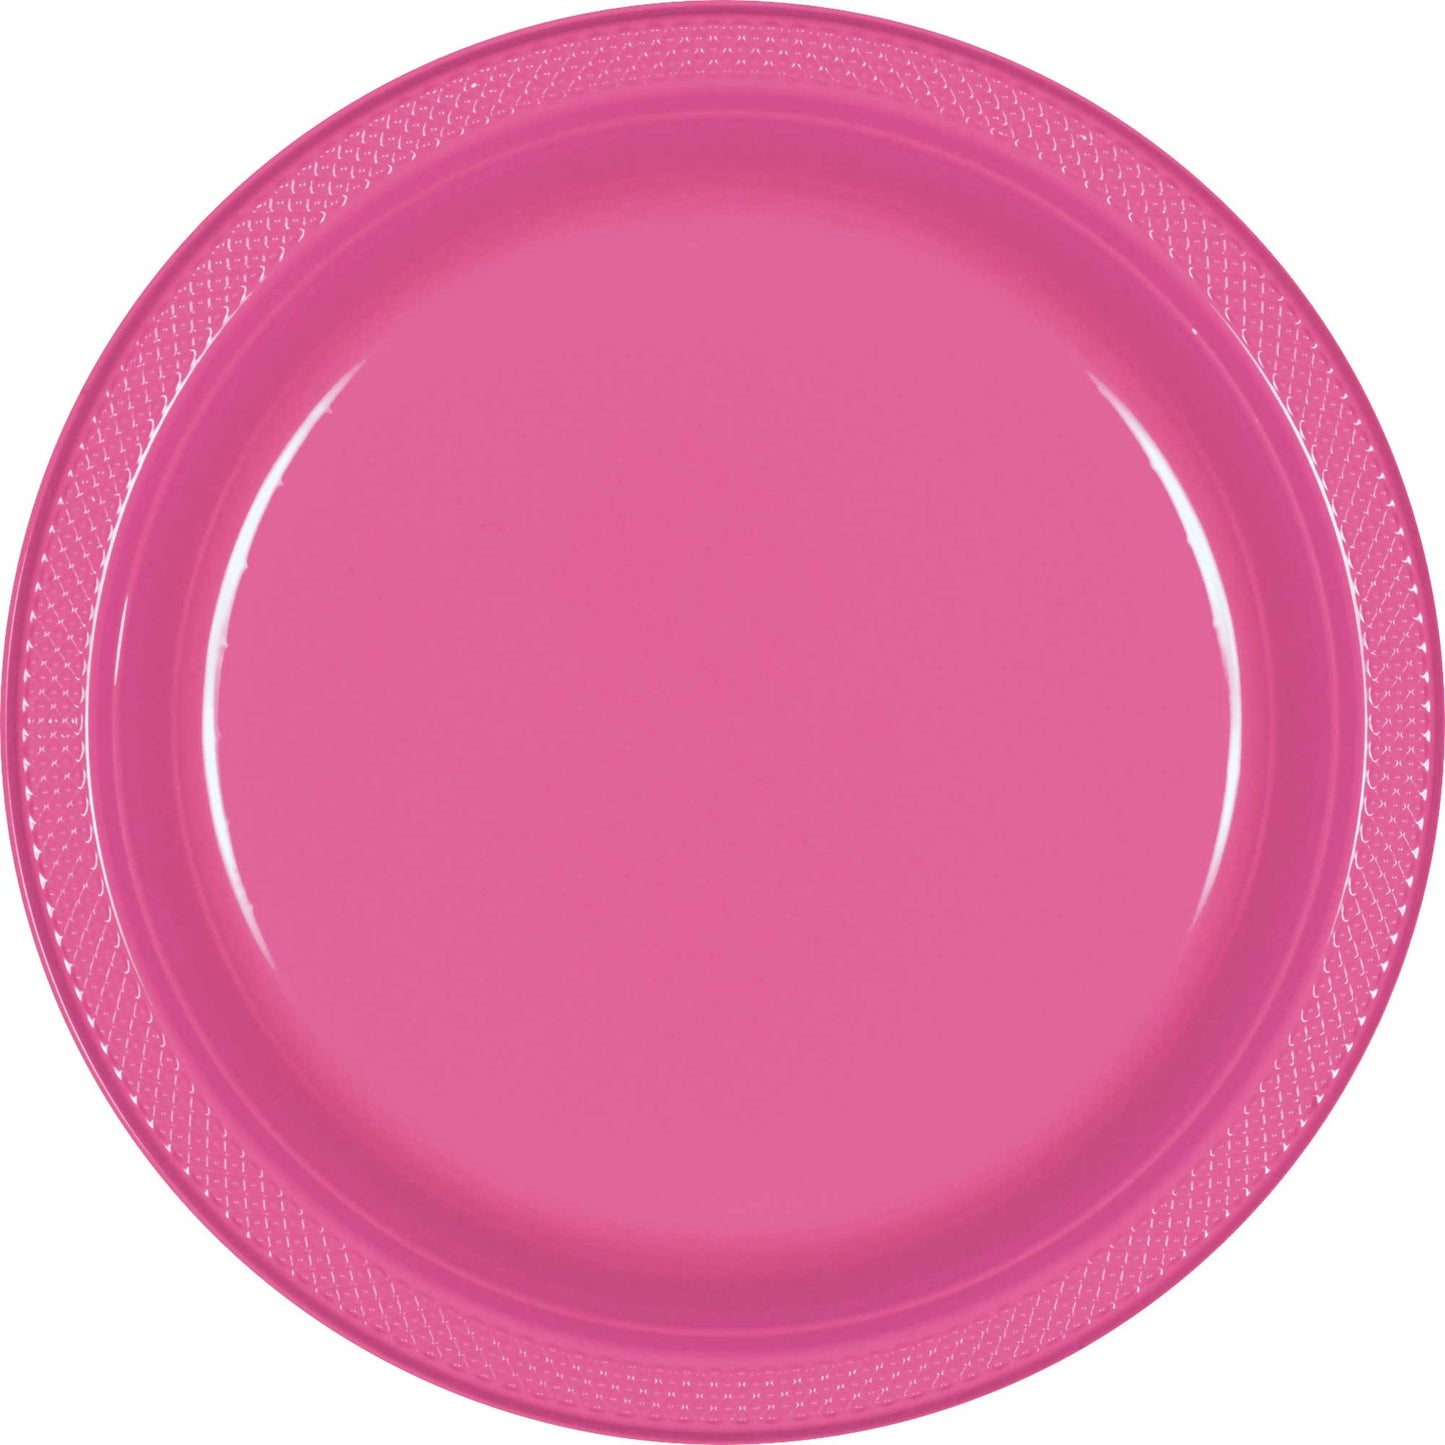 Premium Plastic Plates 26cm 20 Pack - Bright Pink